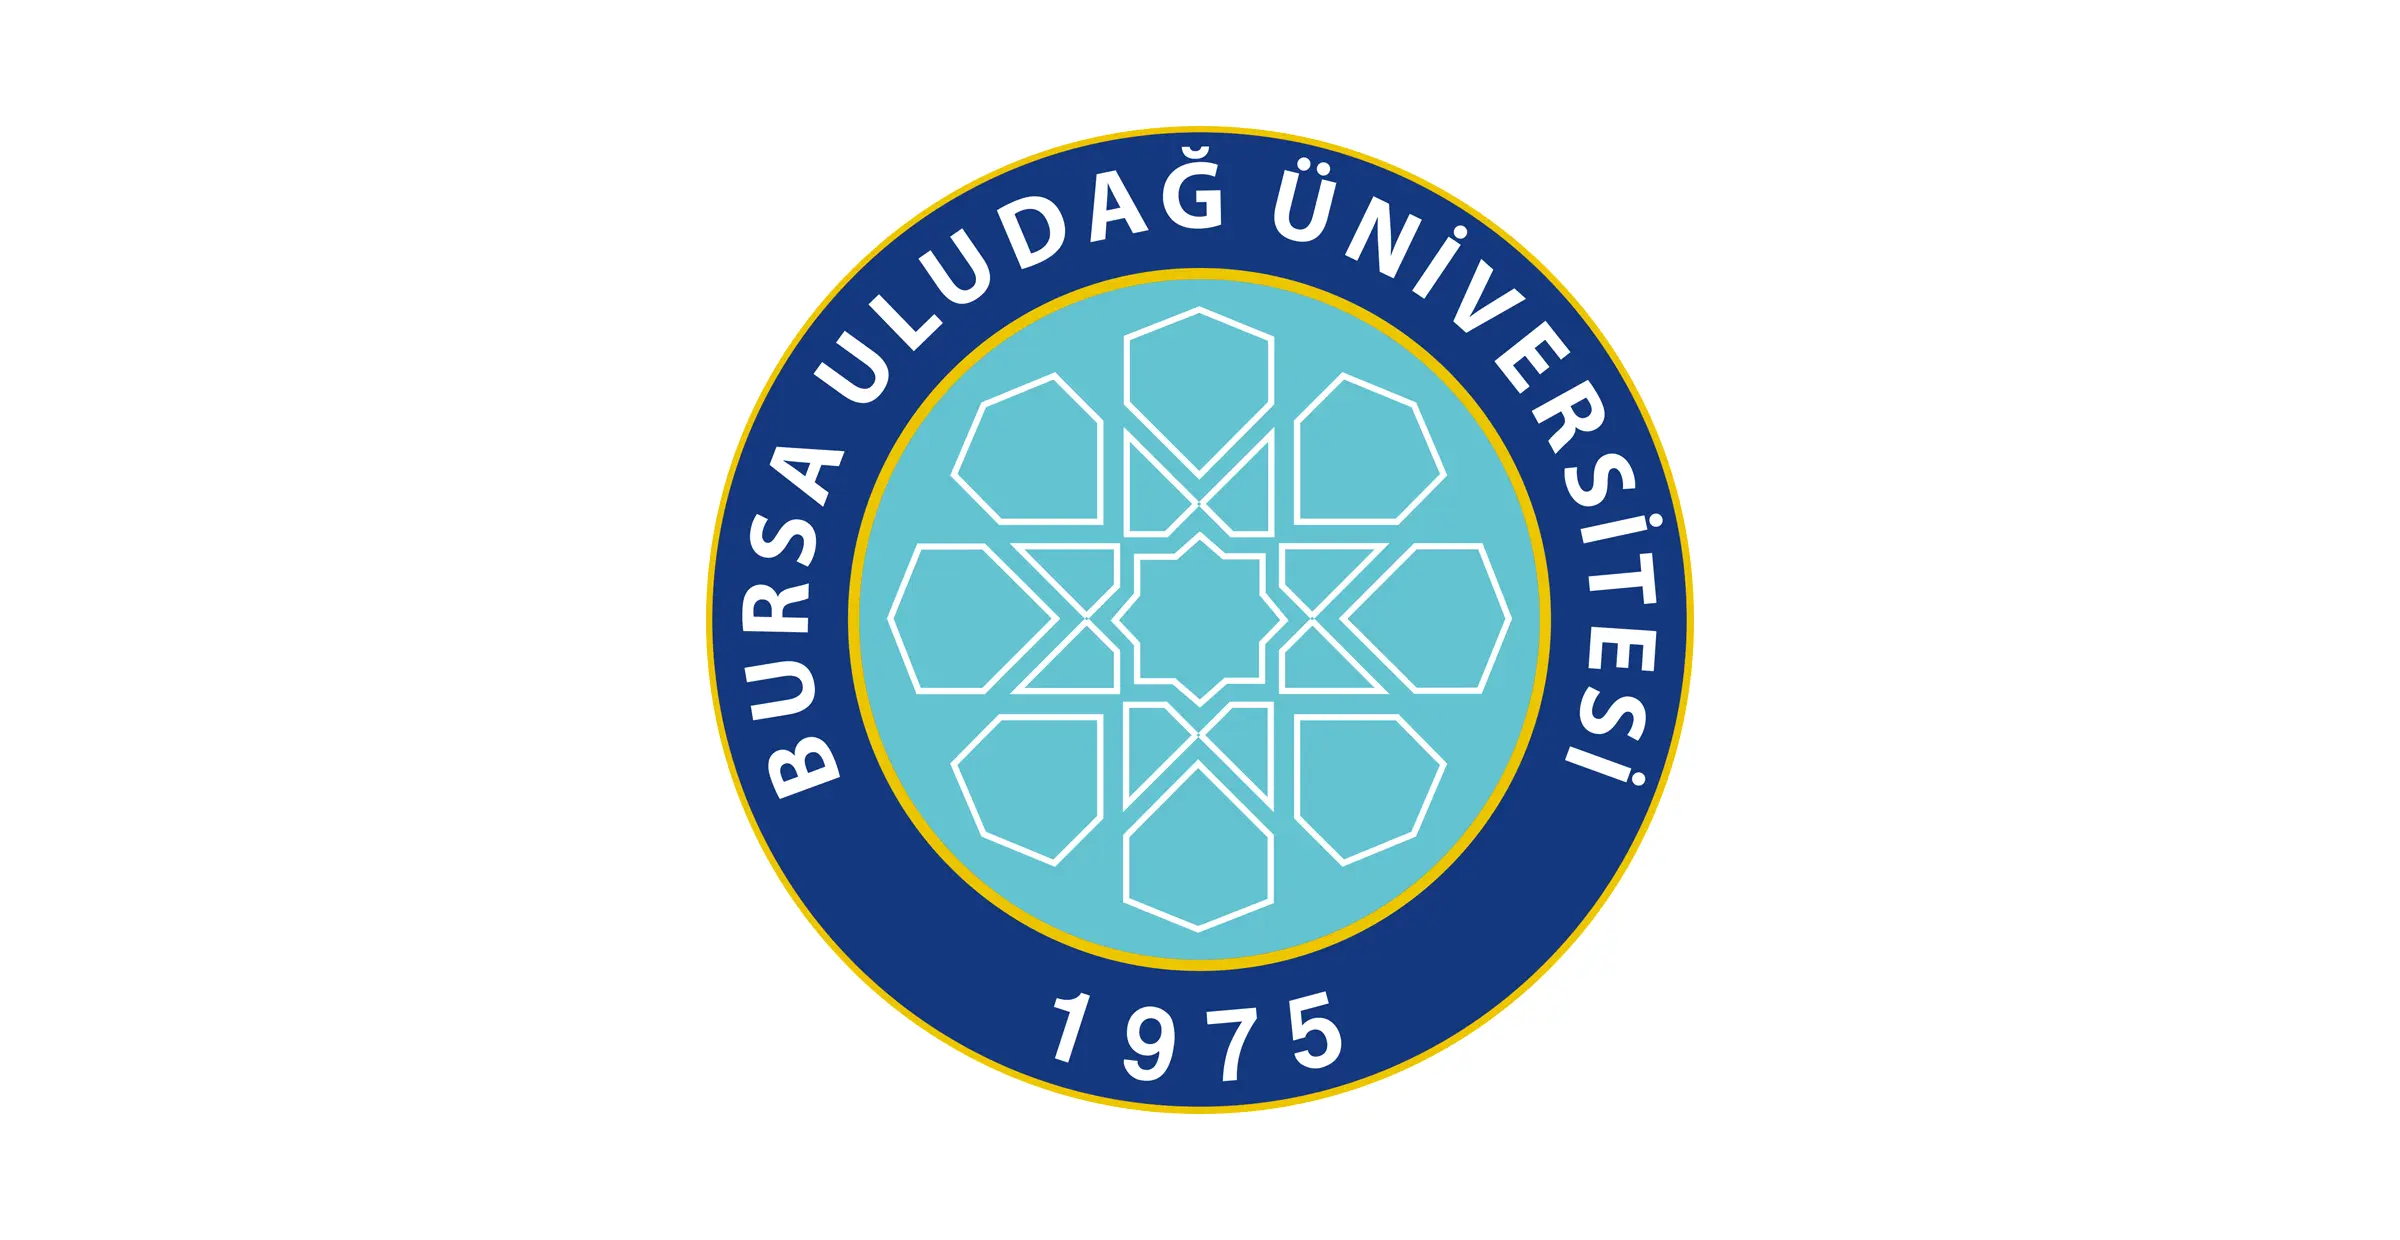 تأسست جامعة بورصا اولوداغ Bursa Uludağ Üniversitesi عام 1975. وهي من أعرق الجامعات التركية ويوجد فيها 15 كلية و 2 كليات تطبيقية و 15معهد